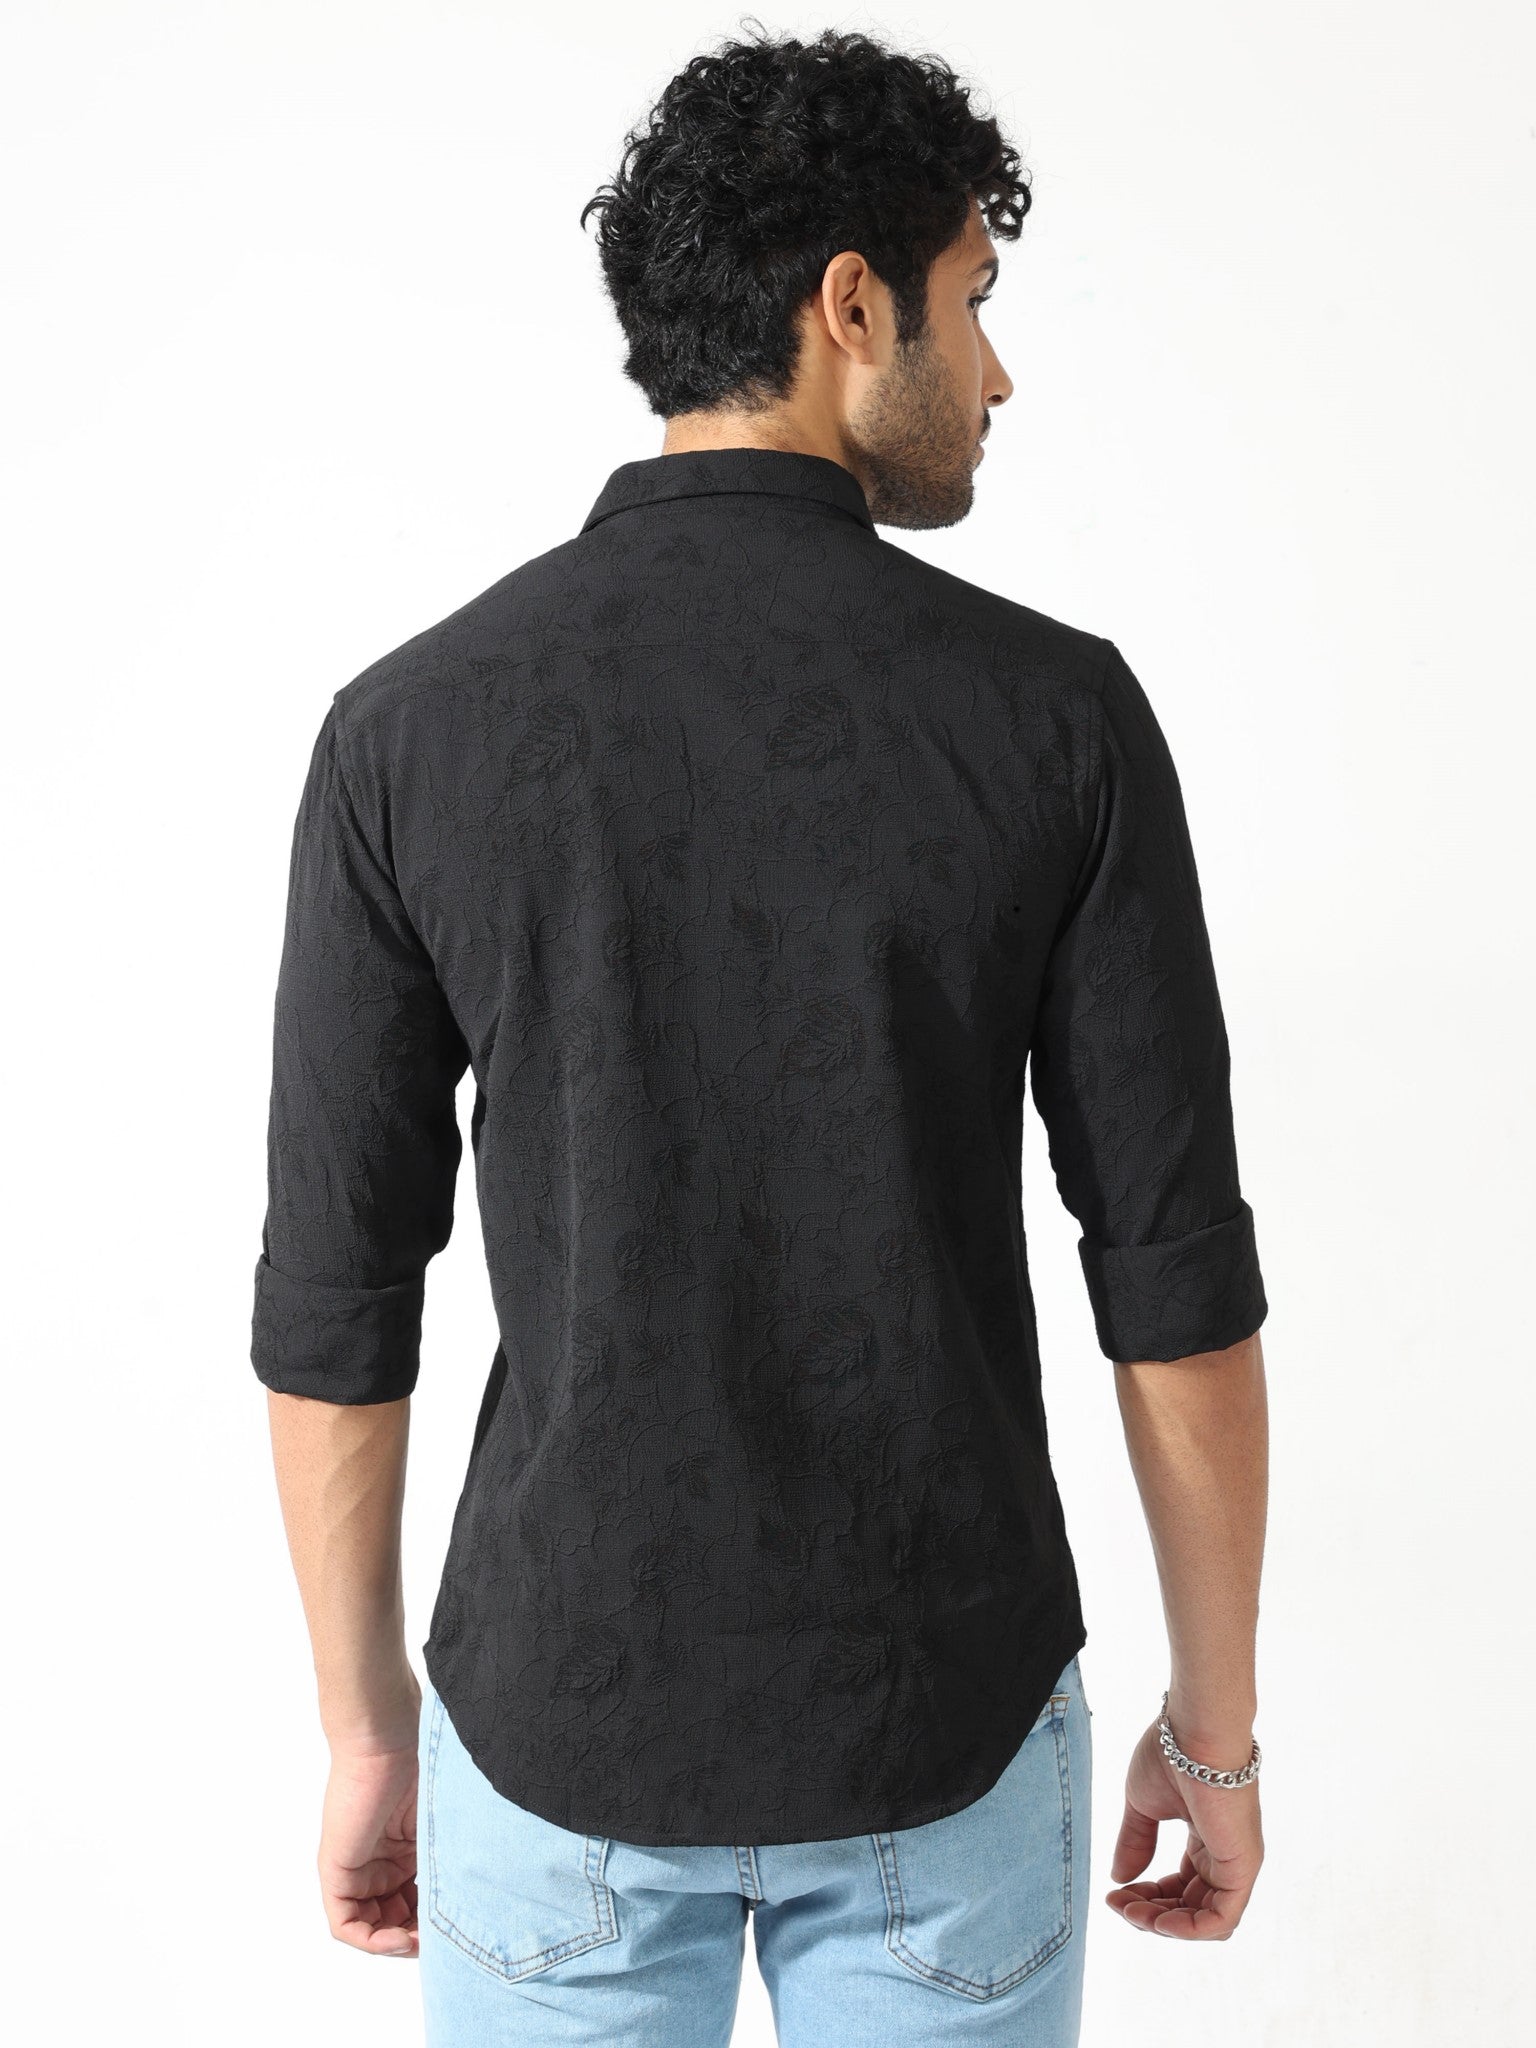 Abstract Jacquard Black Shirt